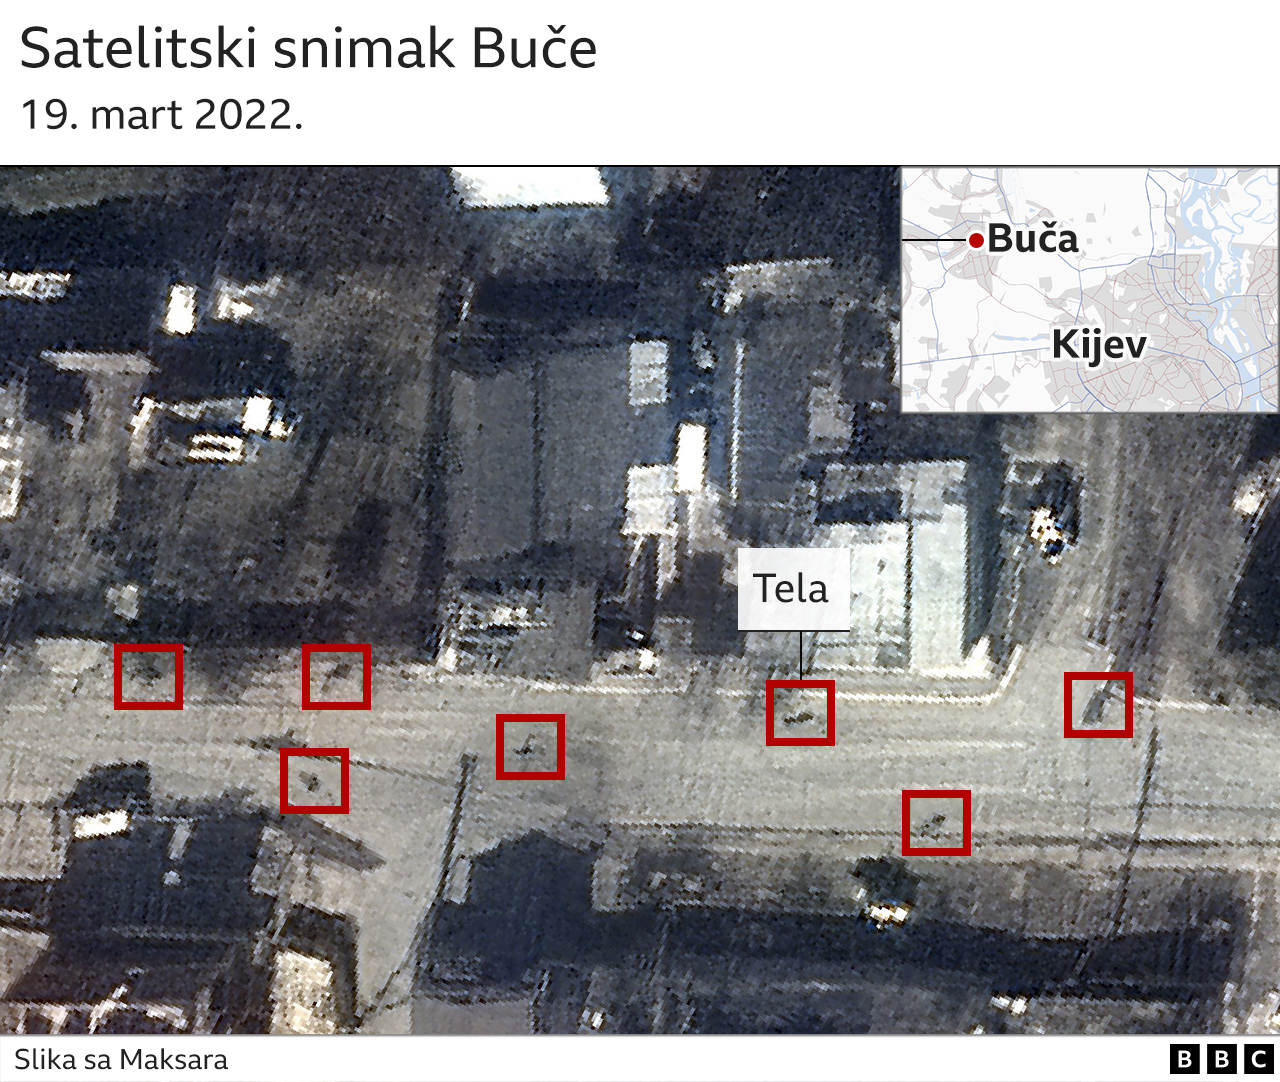 Satelitskiu snimak koji pokazuje tela u Buči, 19. mart